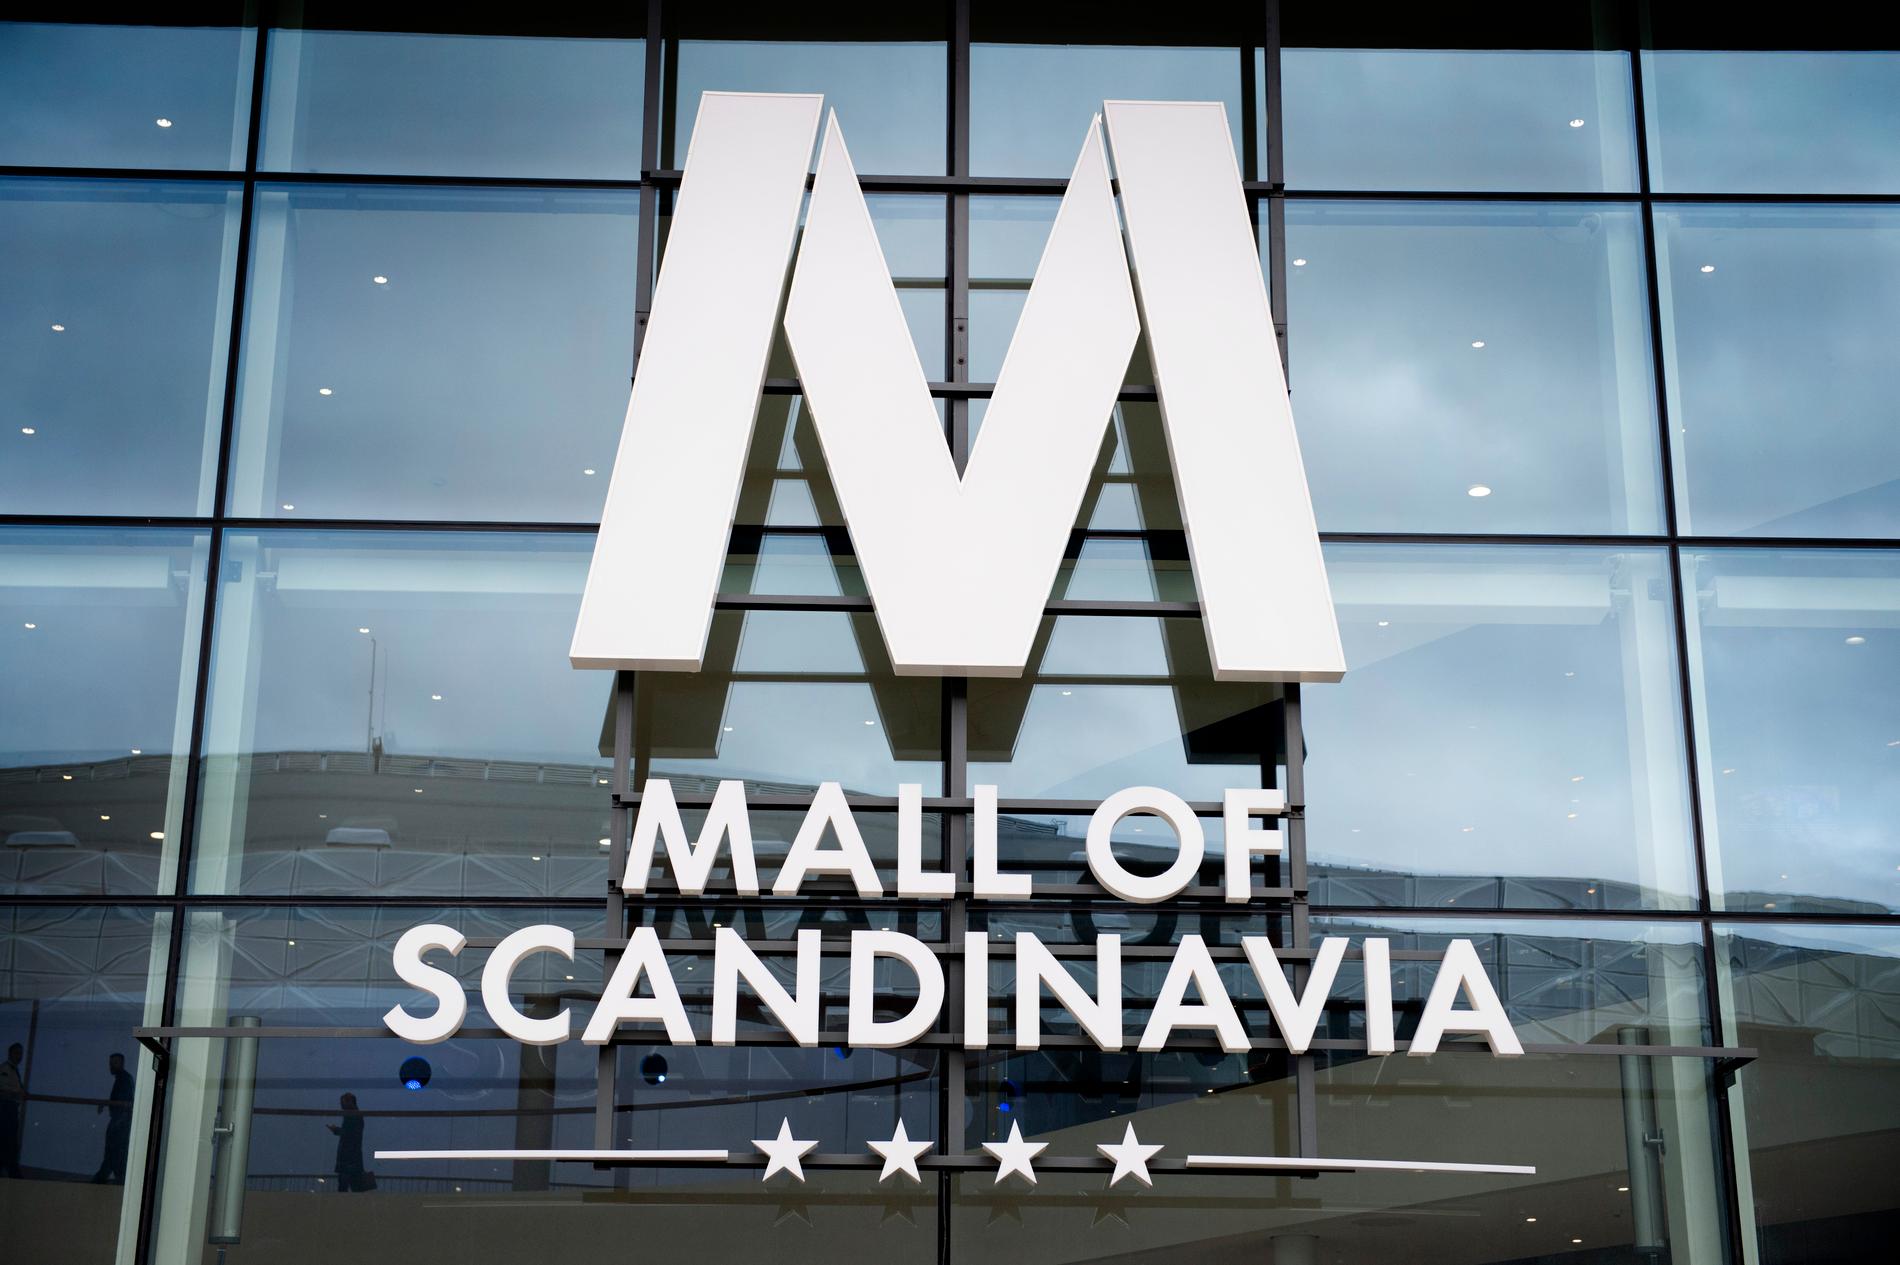 Anställda mådde illa efter läskigt ljud på Mall of Scandinavia: ”Jätteobehagligt”.